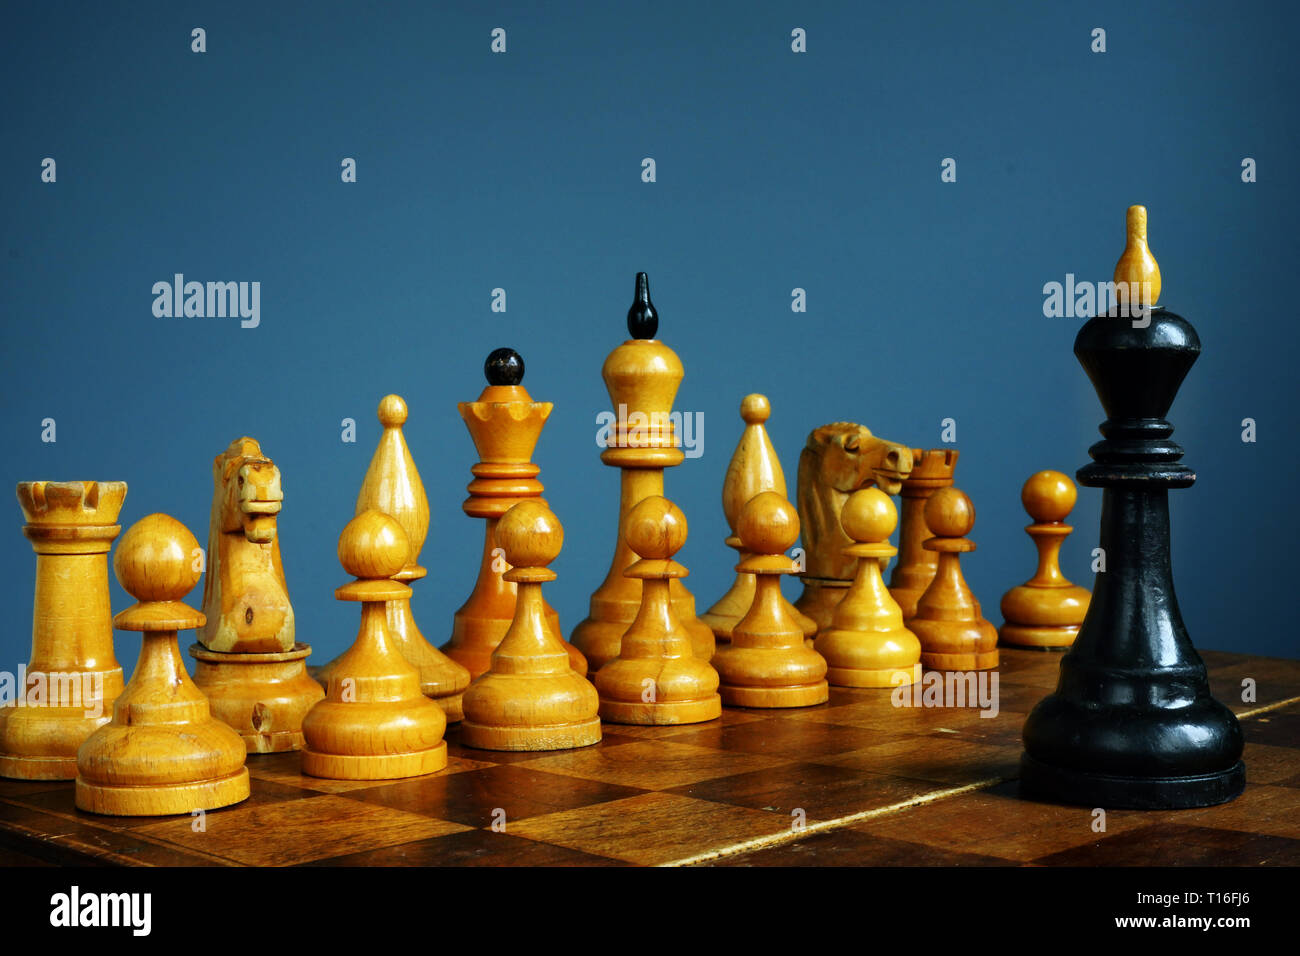 Geschäftliche Herausforderung und Wettbewerbsstrategie Konzept. König vor anderen Schach. Stockfoto